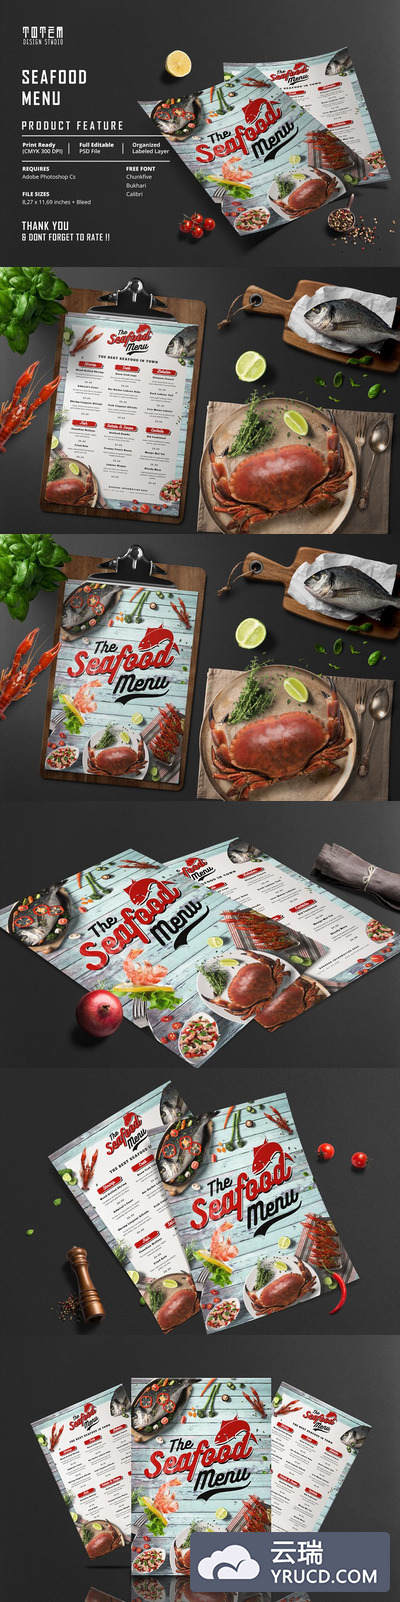 海鲜餐厅食品菜单/传单设计模板